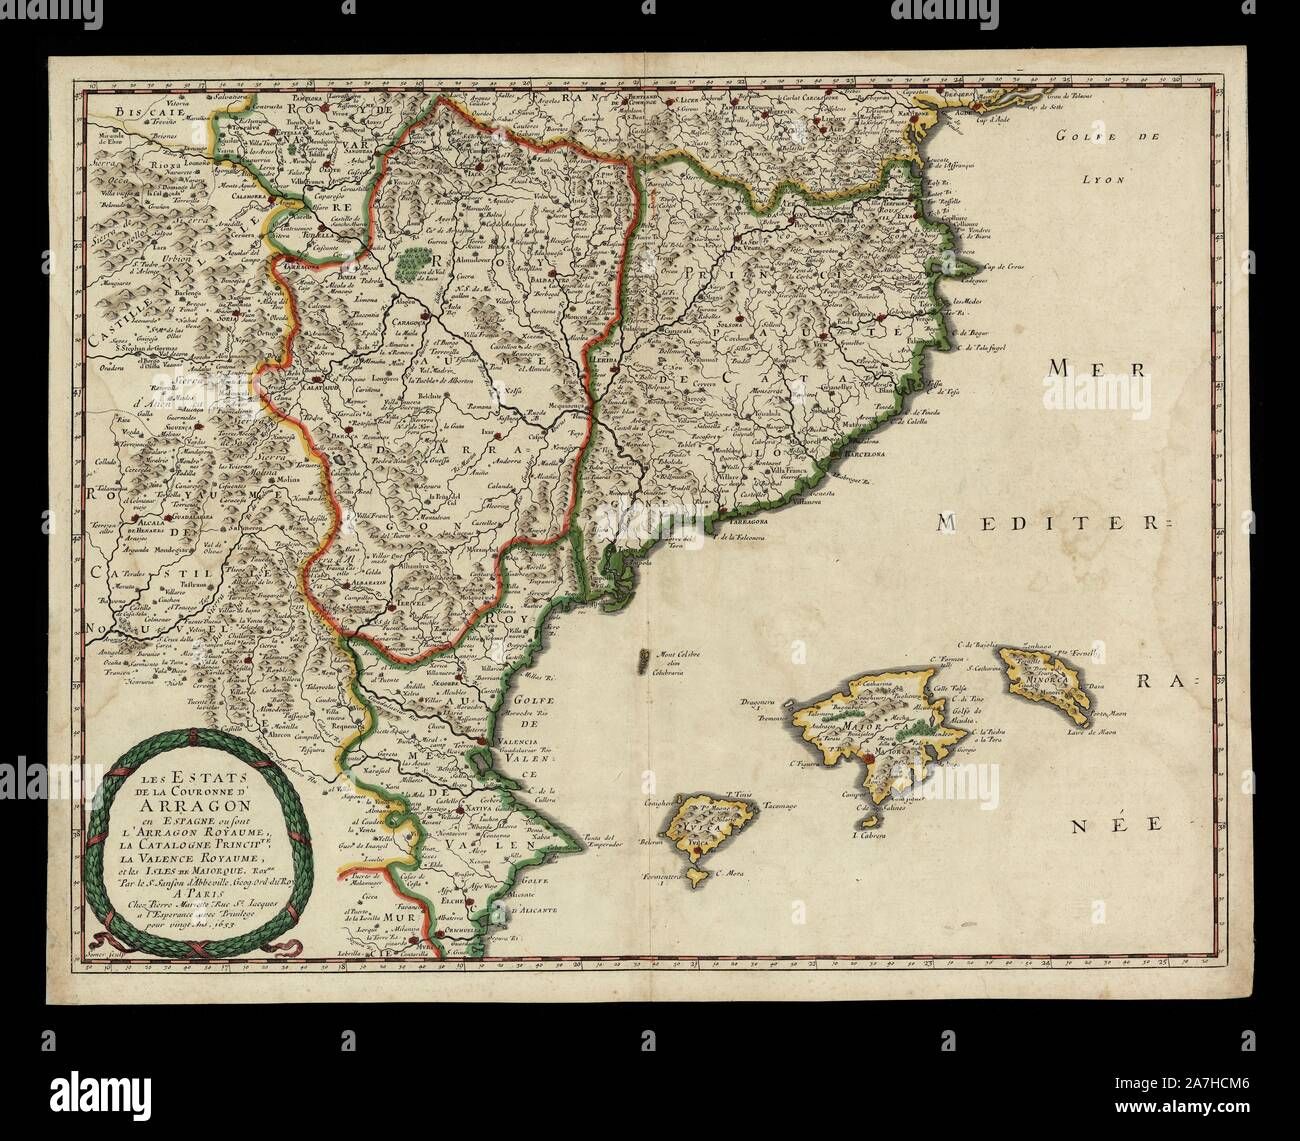 la-corona-de-aragn-mapa-de-los-estados-de-la-corona-a-aragn-en-espaa-donde-se-encuentran-el-reino-de-aragn-el-principado-de-catalua-el-reino-de-valencia-y-la-islas-de-mallorca-1653-autor-pierre-marietta-2A7HCM6.jpg